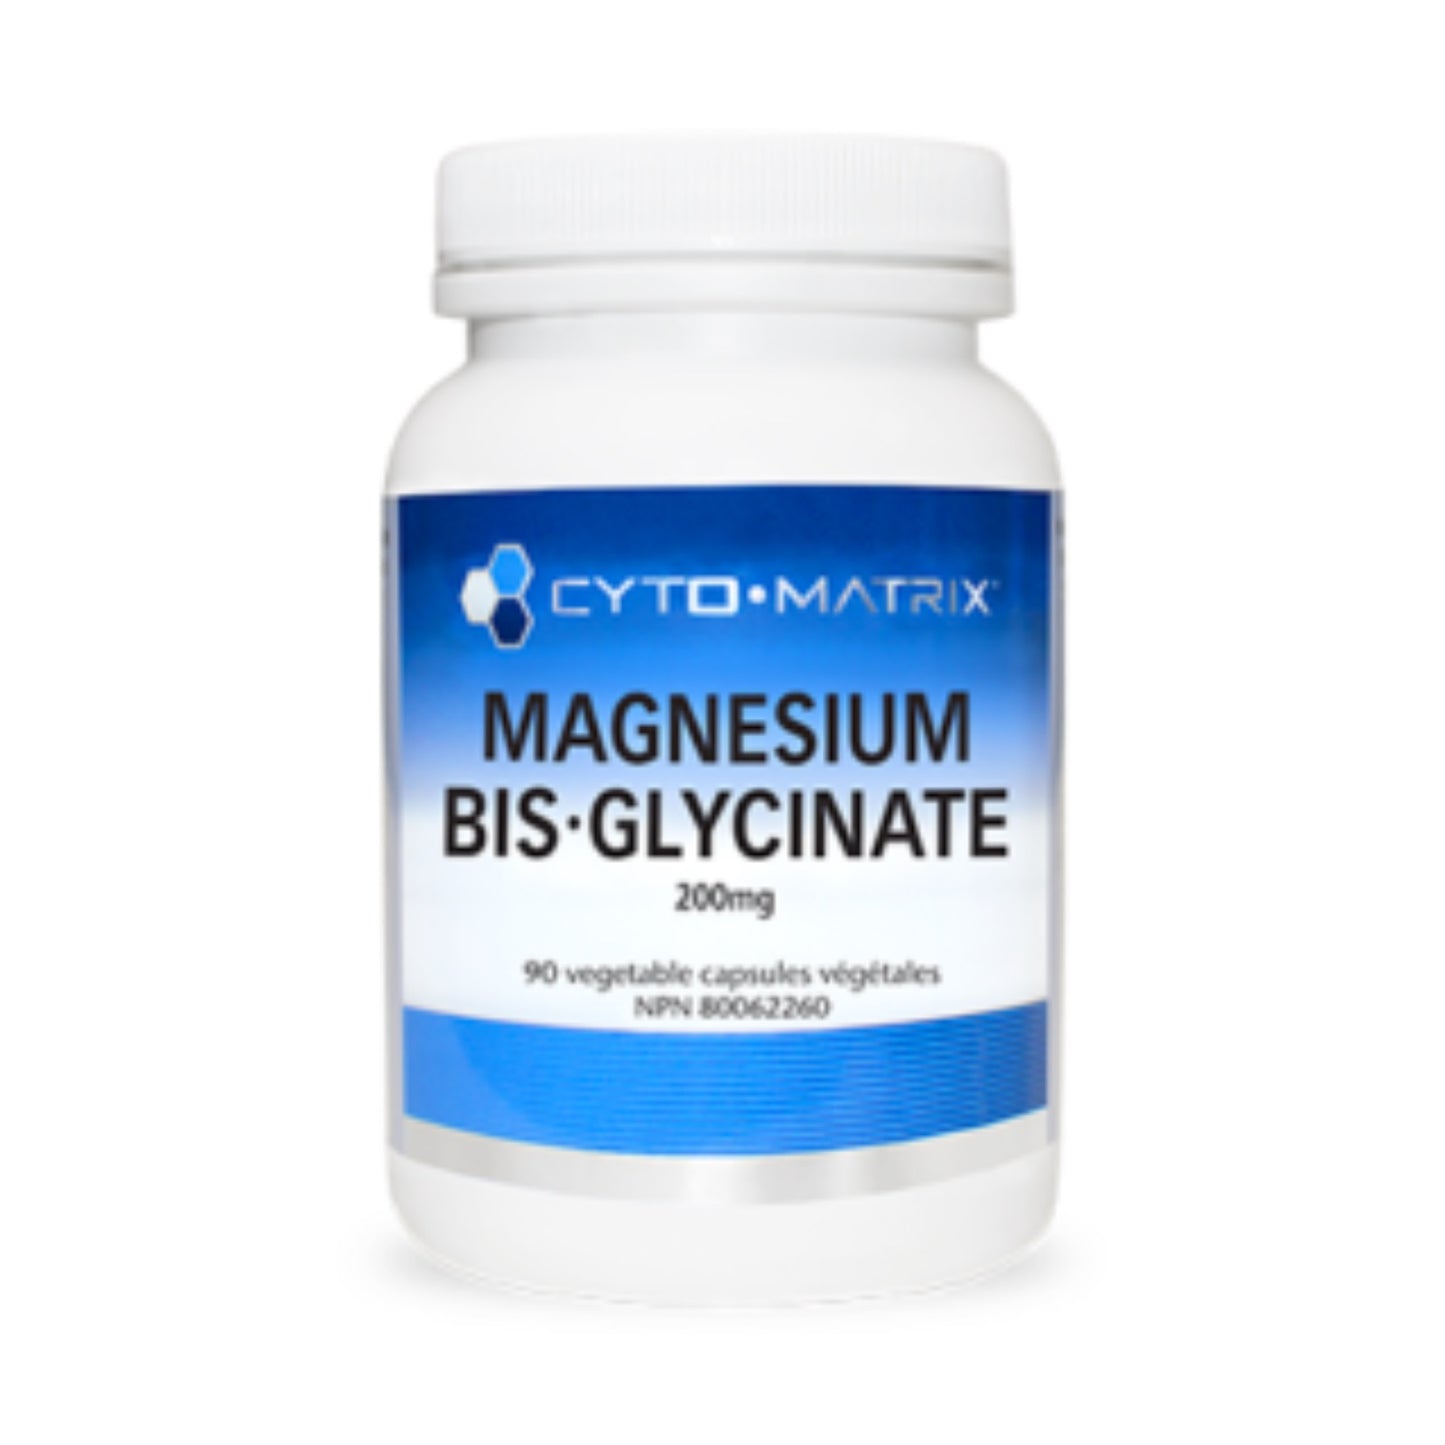 Cyto-Matrix Magnesium Bis-Glycinate 90 Vegetable Capsules